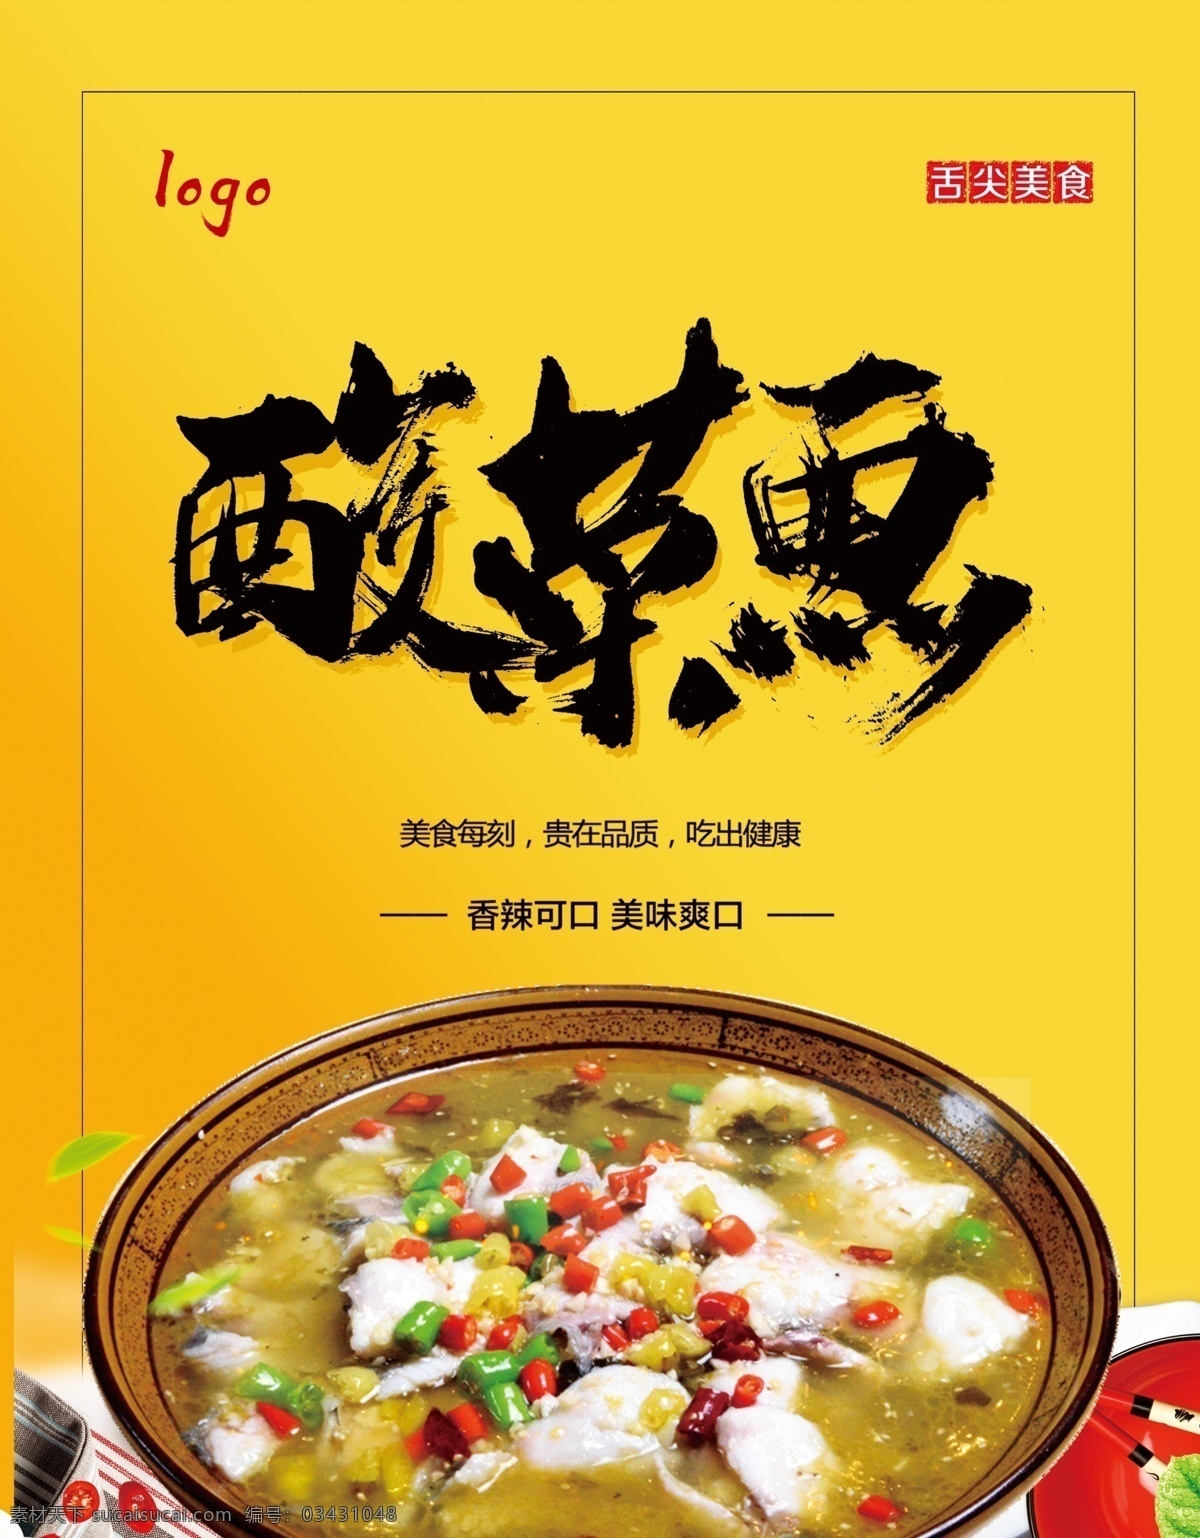 酸菜鱼海报 酸菜鱼 黄色 食品 海报 展板 宣传 酸菜 鱼